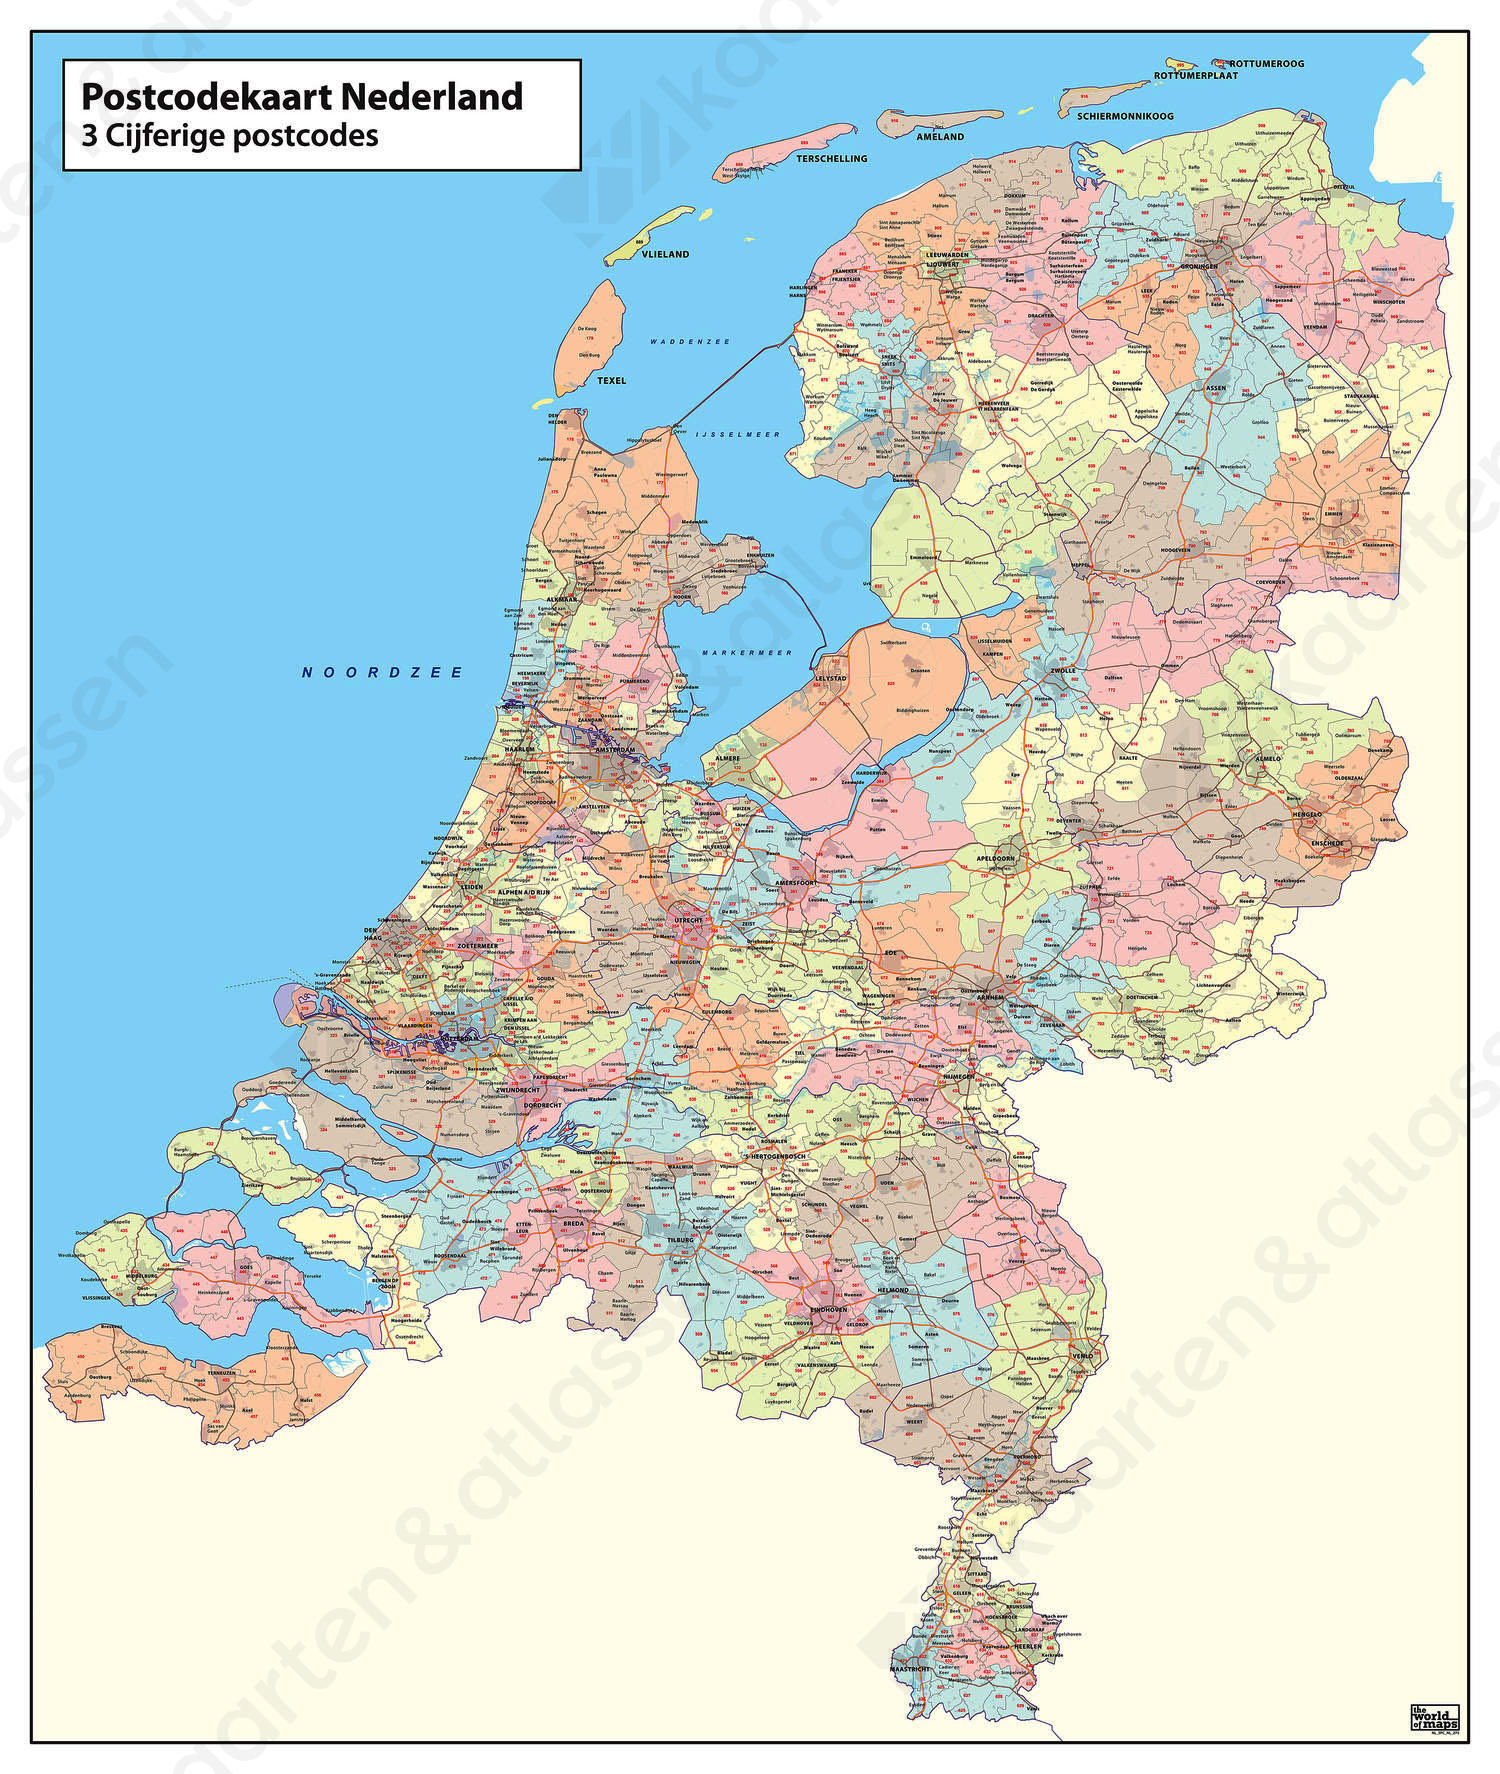 Digitale 3 ppc kaart Nederland